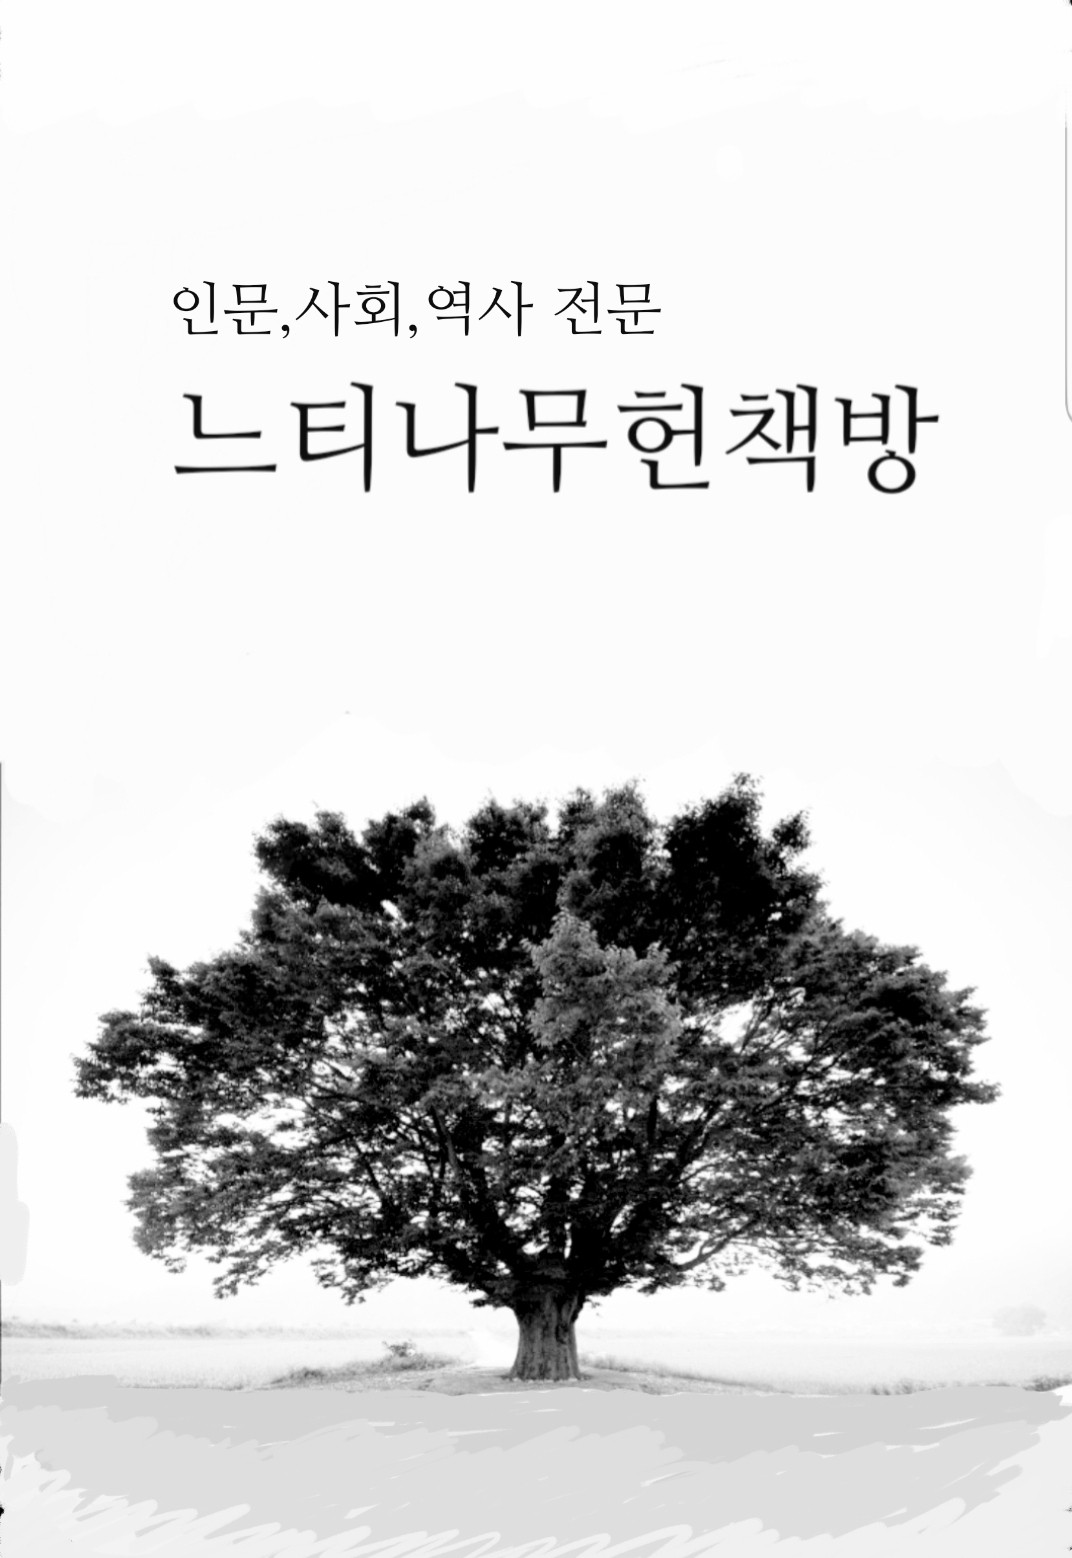 KOREANA by peter hyun - 해외에 한국을 알리는 사진+글 (알가16-1코너)